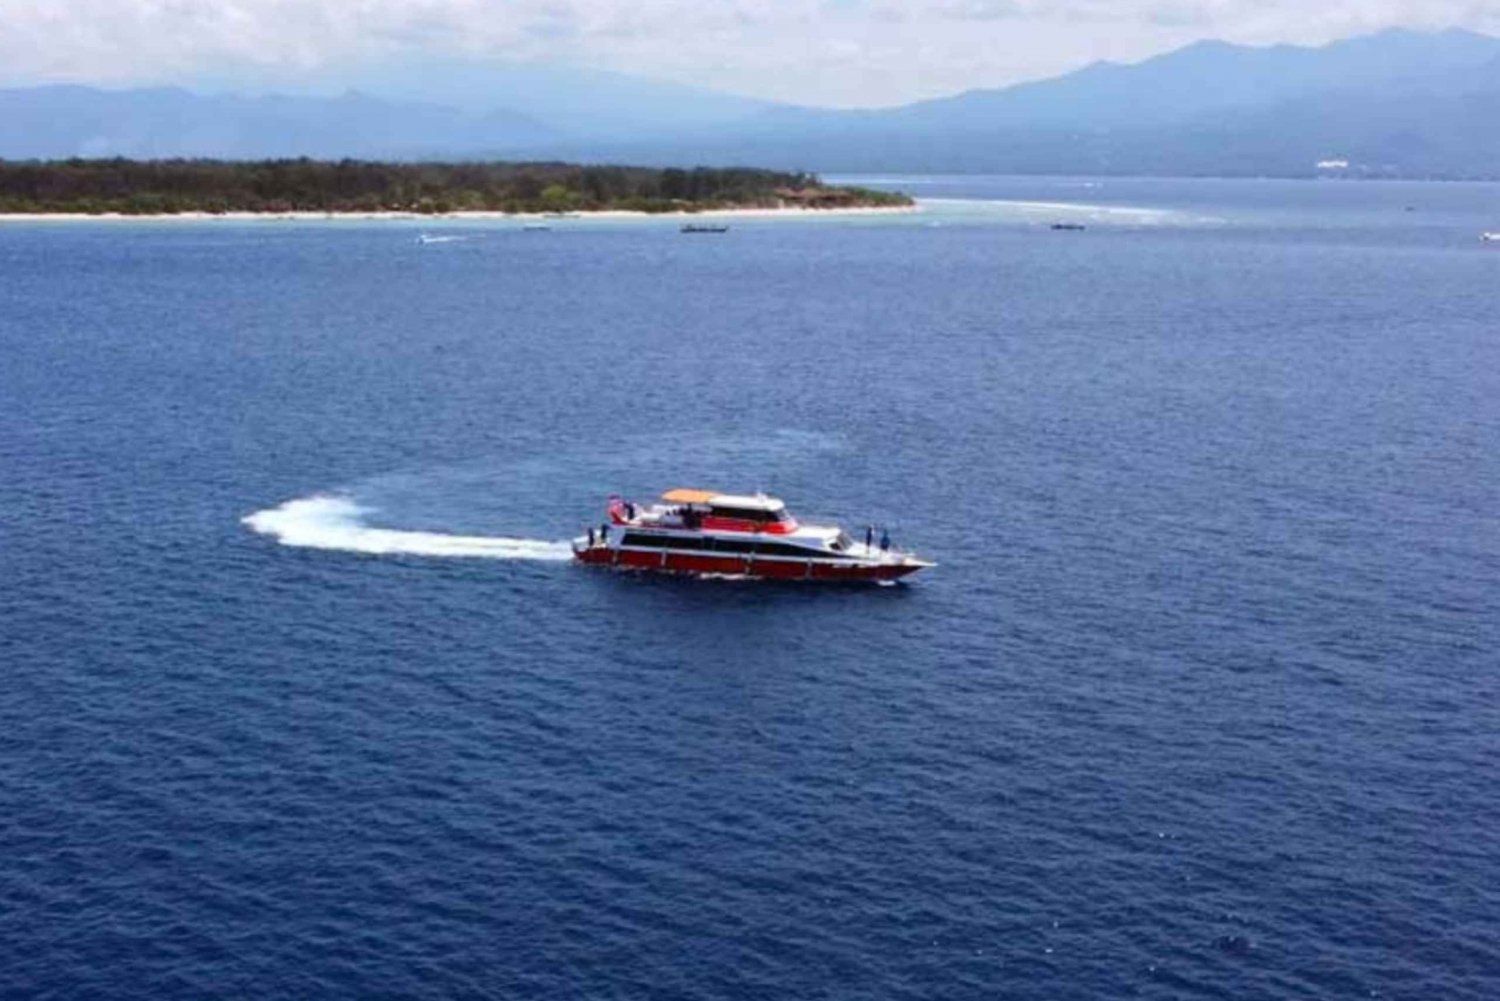 Kuljetus Nusa Lembonganin ja Gili Islandin välillä